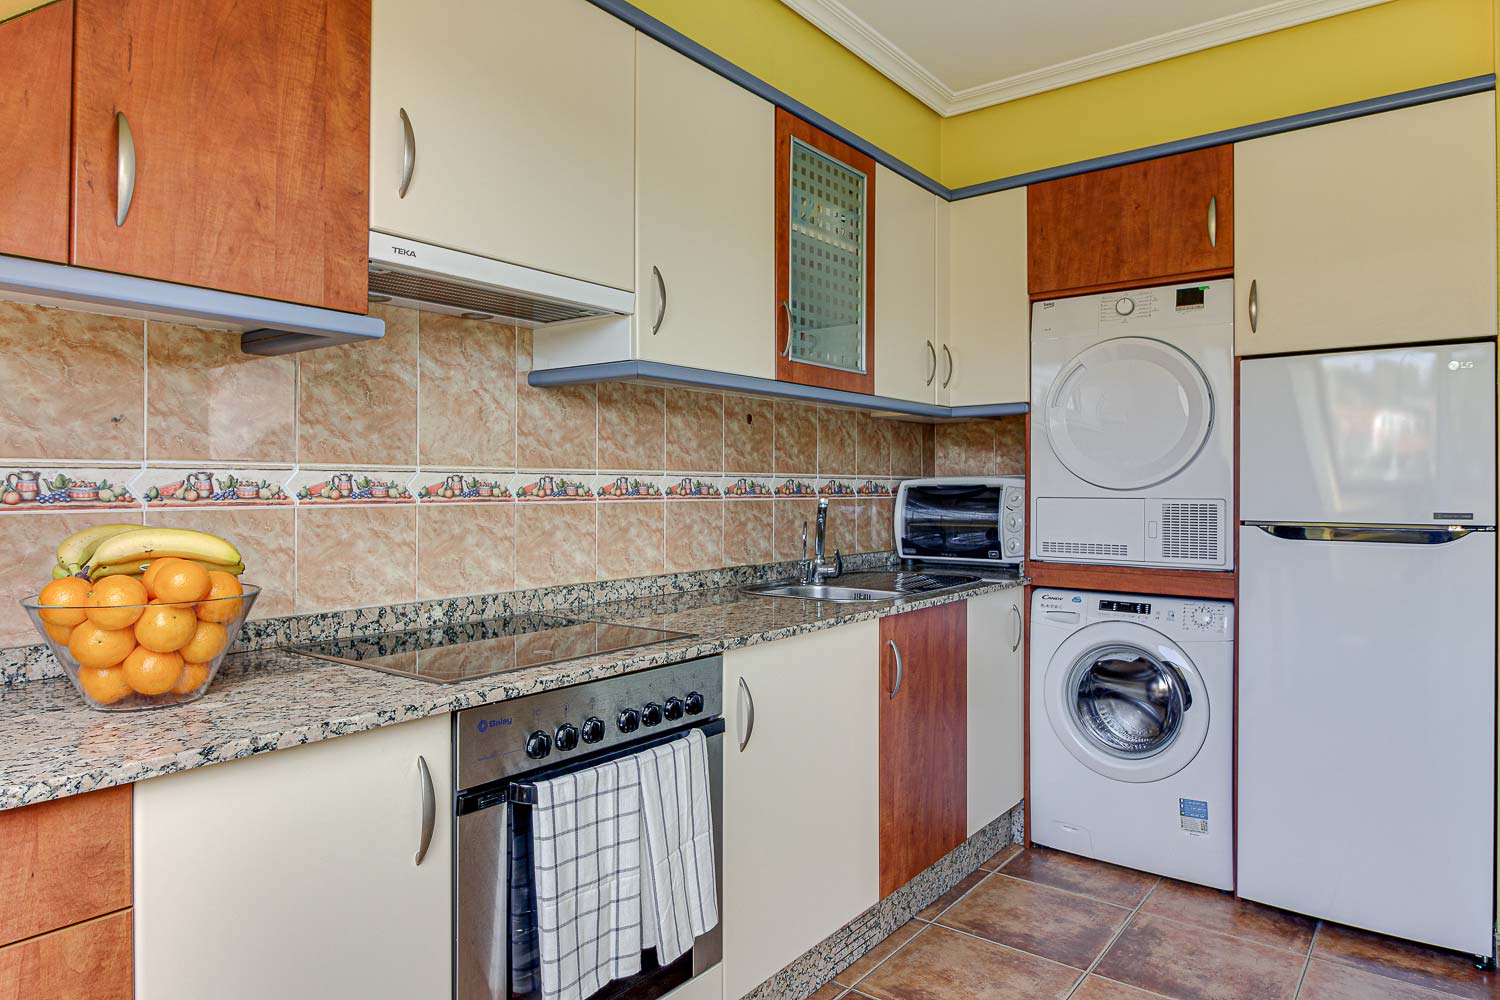 Cocina piso de Vilaboa_ puertas de armarios de distintos colores y azulejo clásico_ lavadora y secadora integradas_ Home Staging